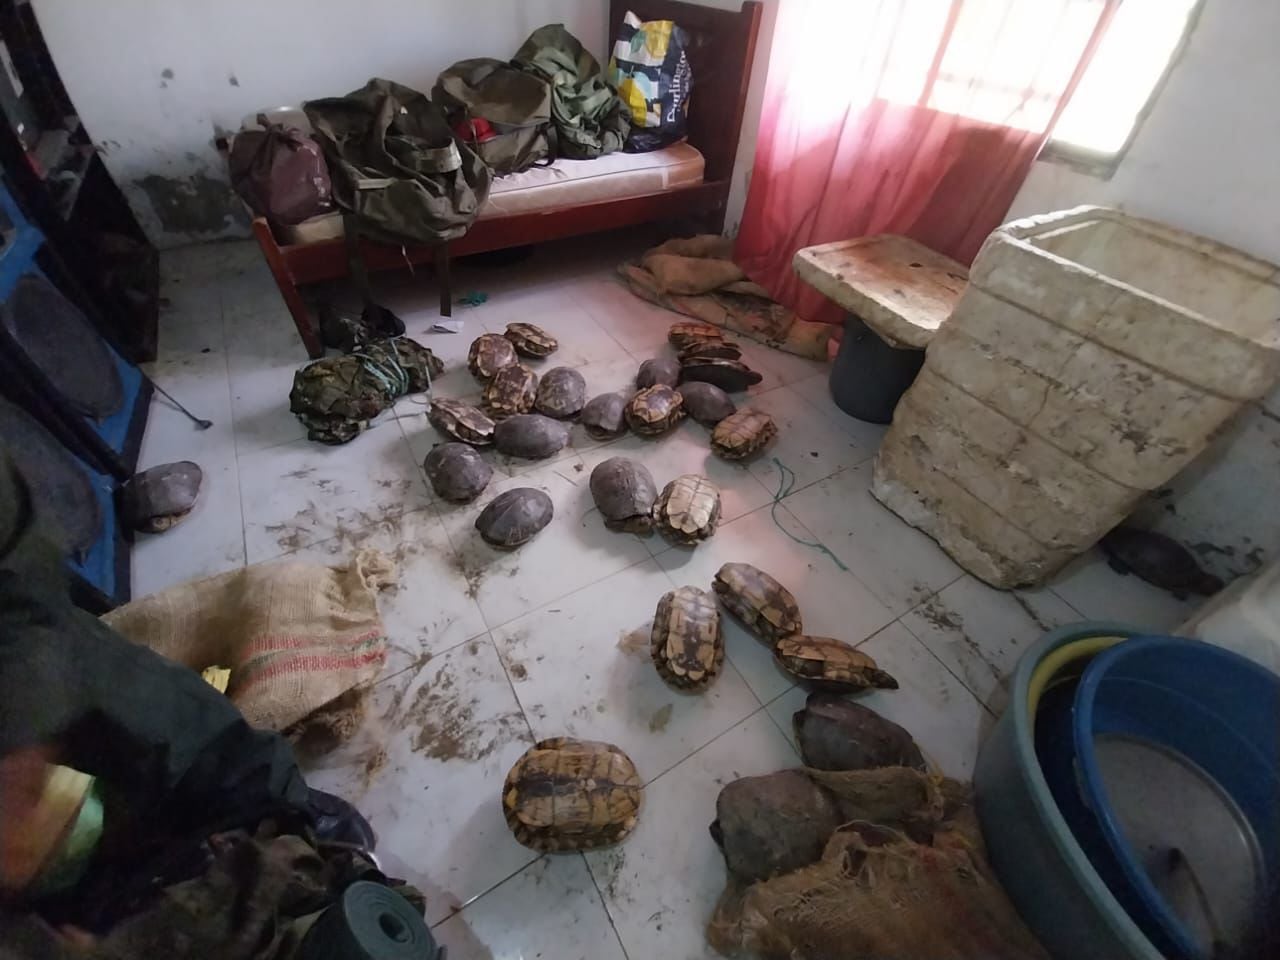 Autoridades ambientales recuperaron 800 tortugas en operativo contra el tráfico ilegal de fauna - crédito Ministerio de Ambiente